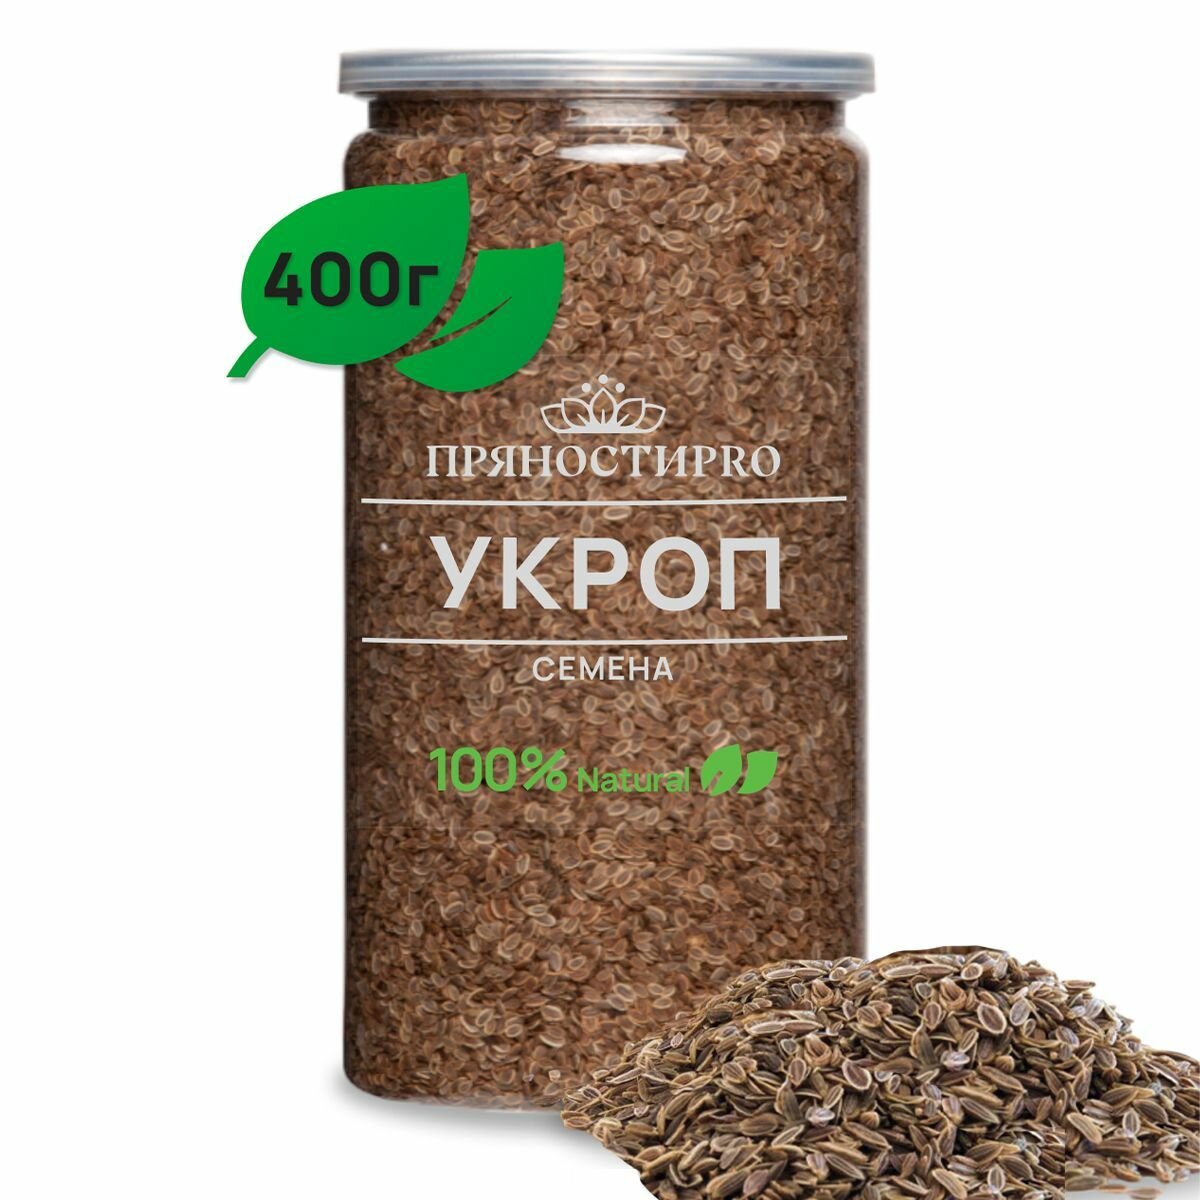 Укроп семена пищевые от ПряностиPro в банке 400 г